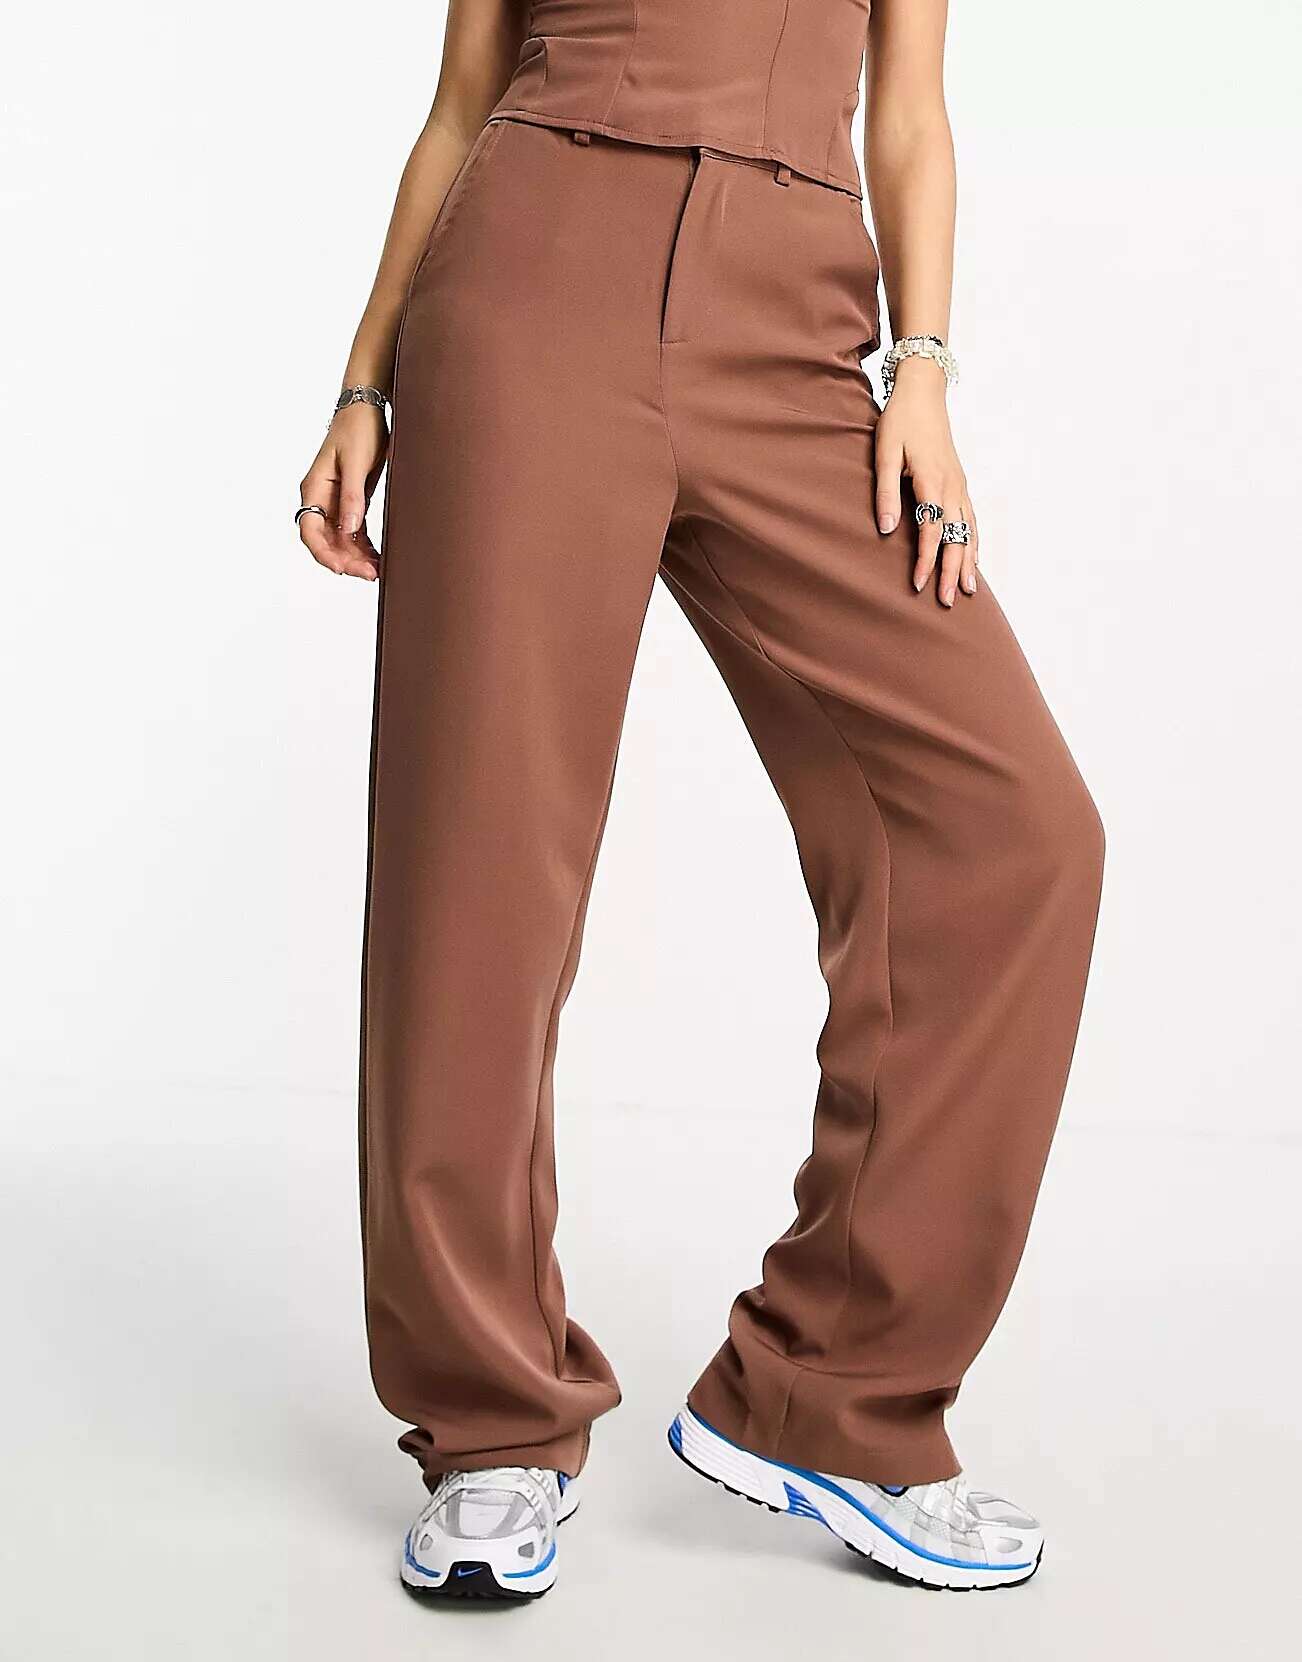 Широкие брюки Heartbreak светло-коричневого цвета только широкие брюки карго коричневого цвета